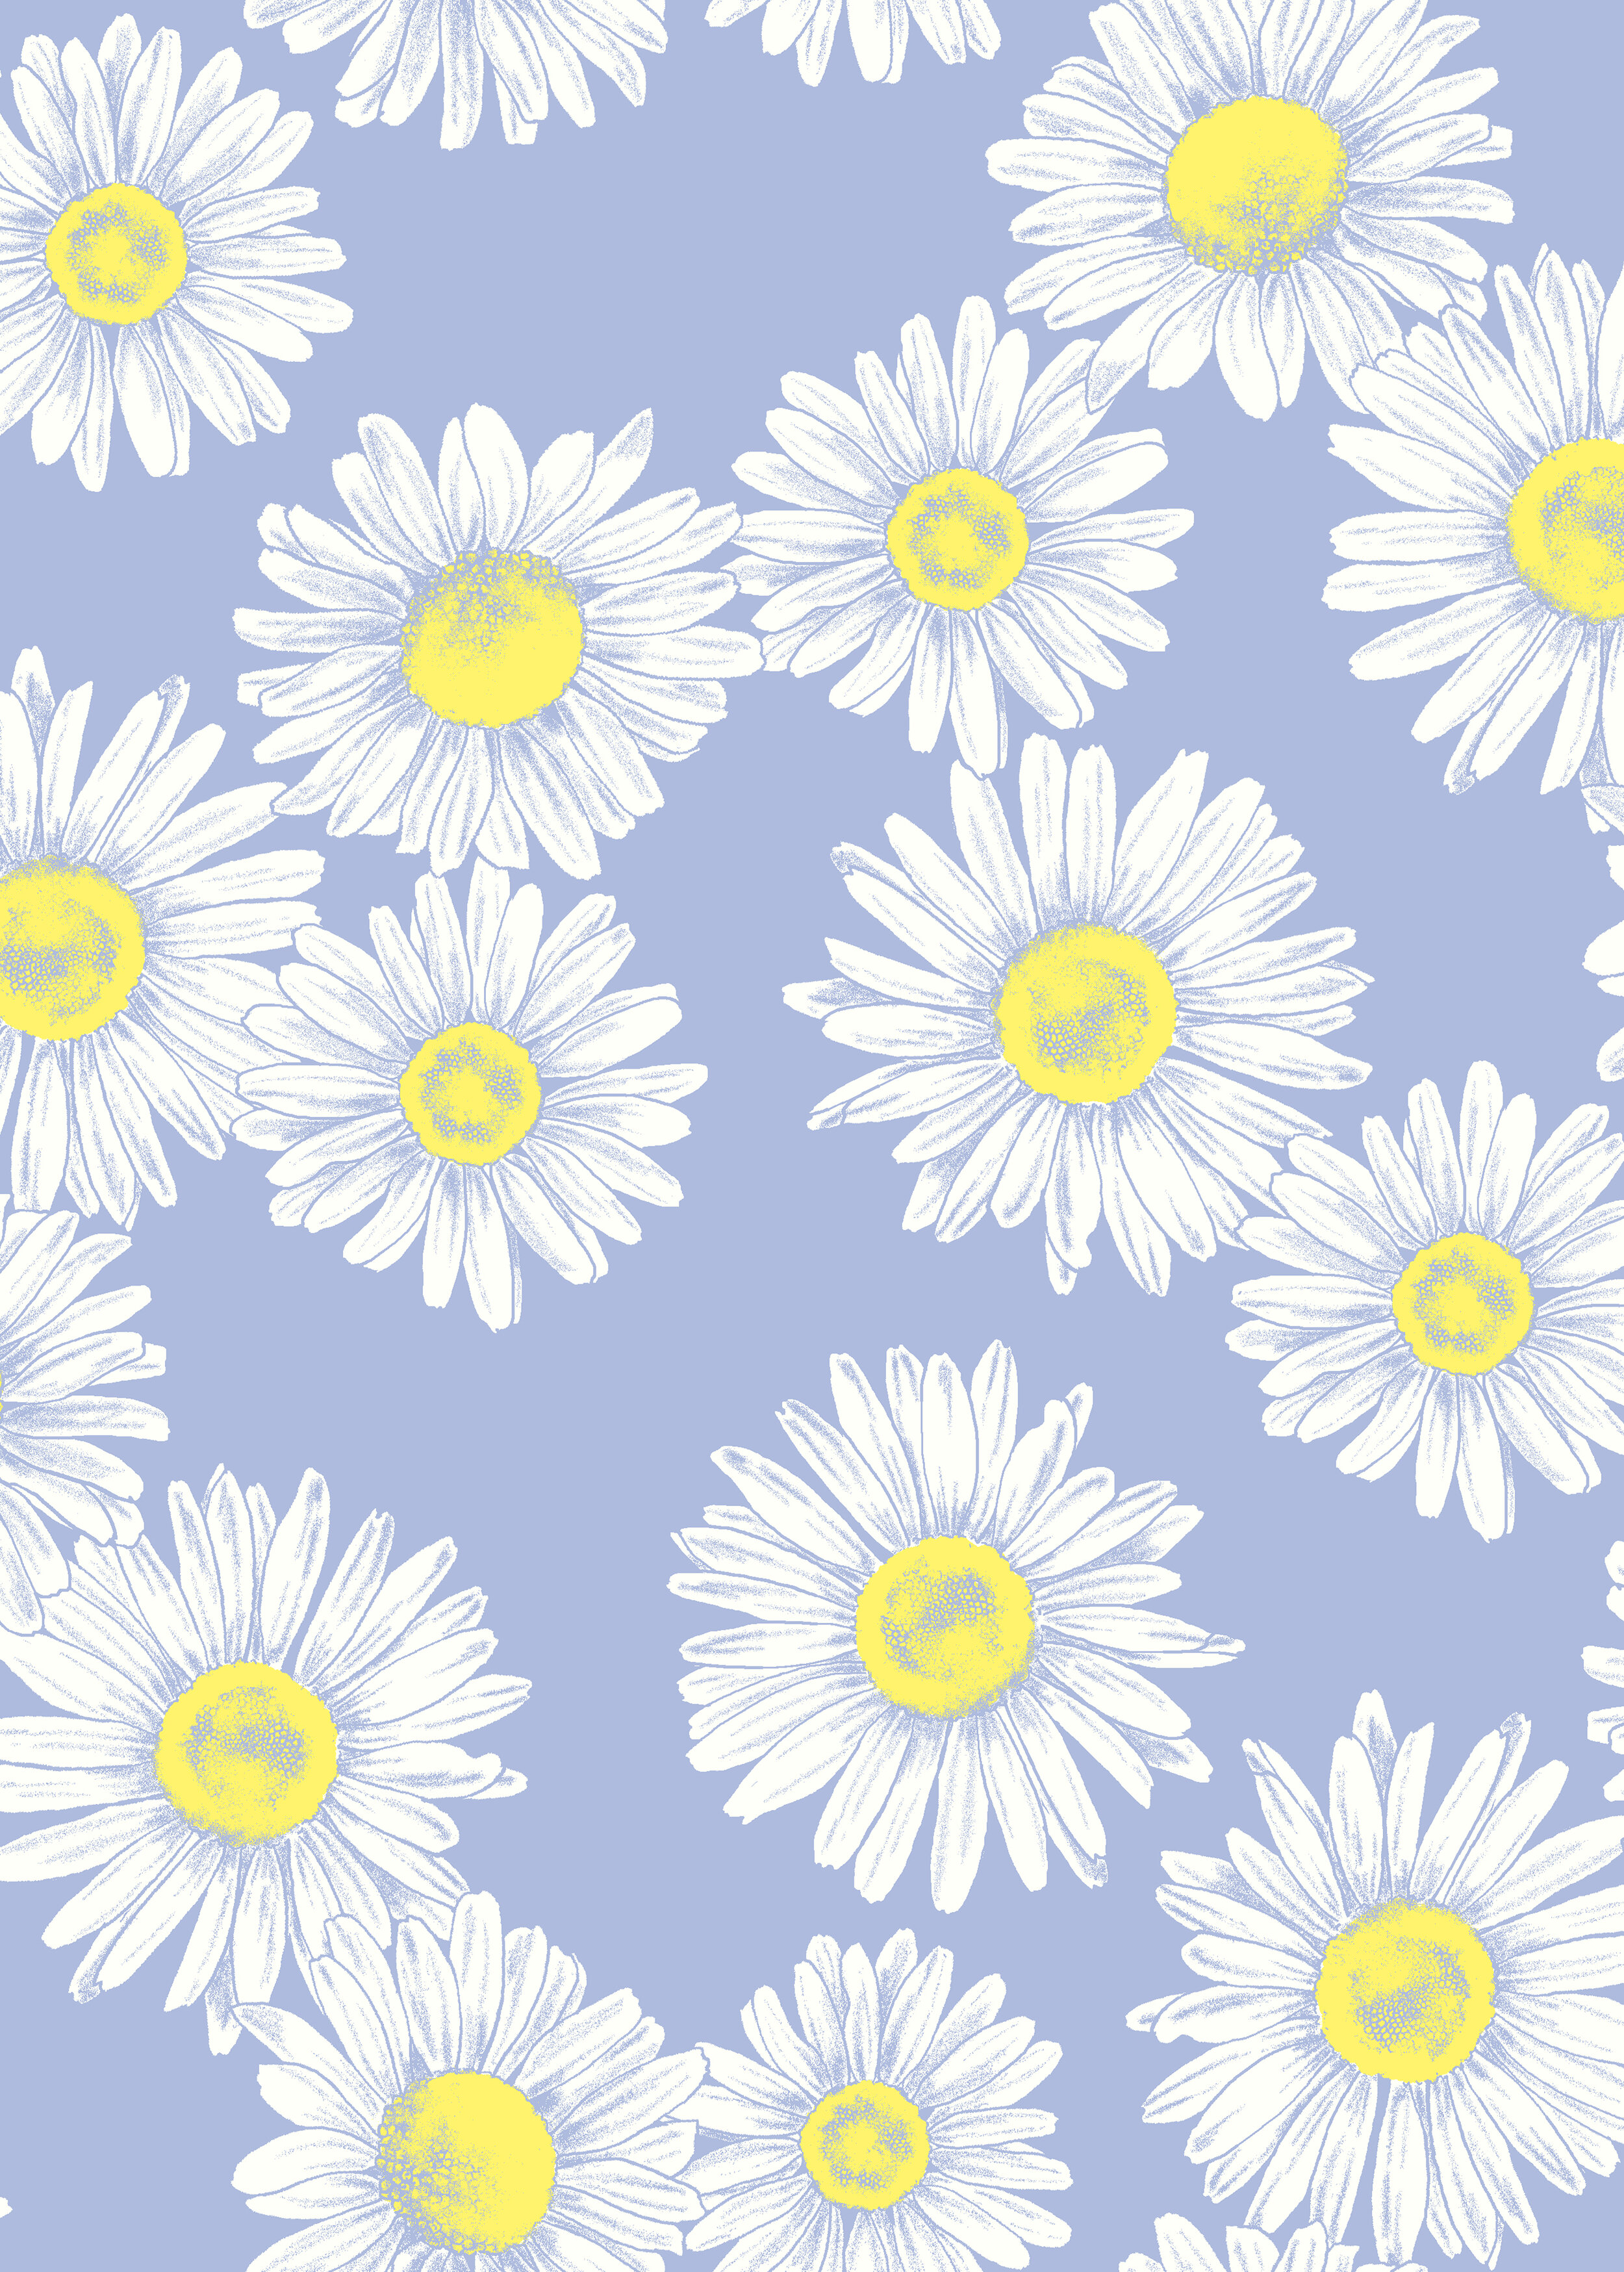 drawn daisies.jpg